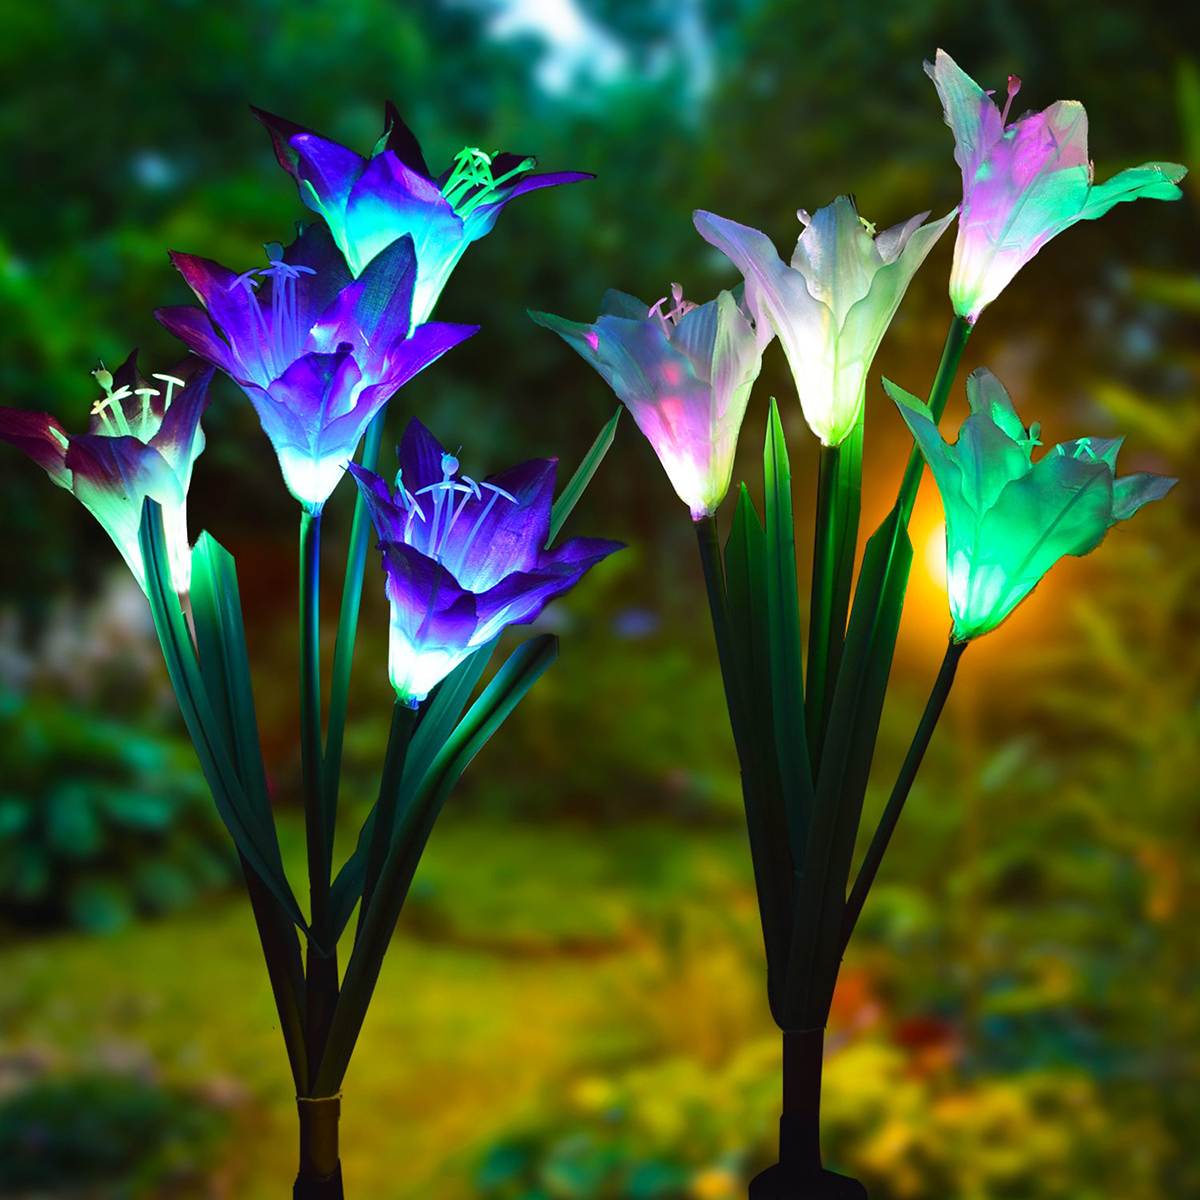 Solar-Power-Lily-Rose-Flower-Stake-Landscape-Lamp-Yard-LED-Light-Outdoor-Garden-1761626